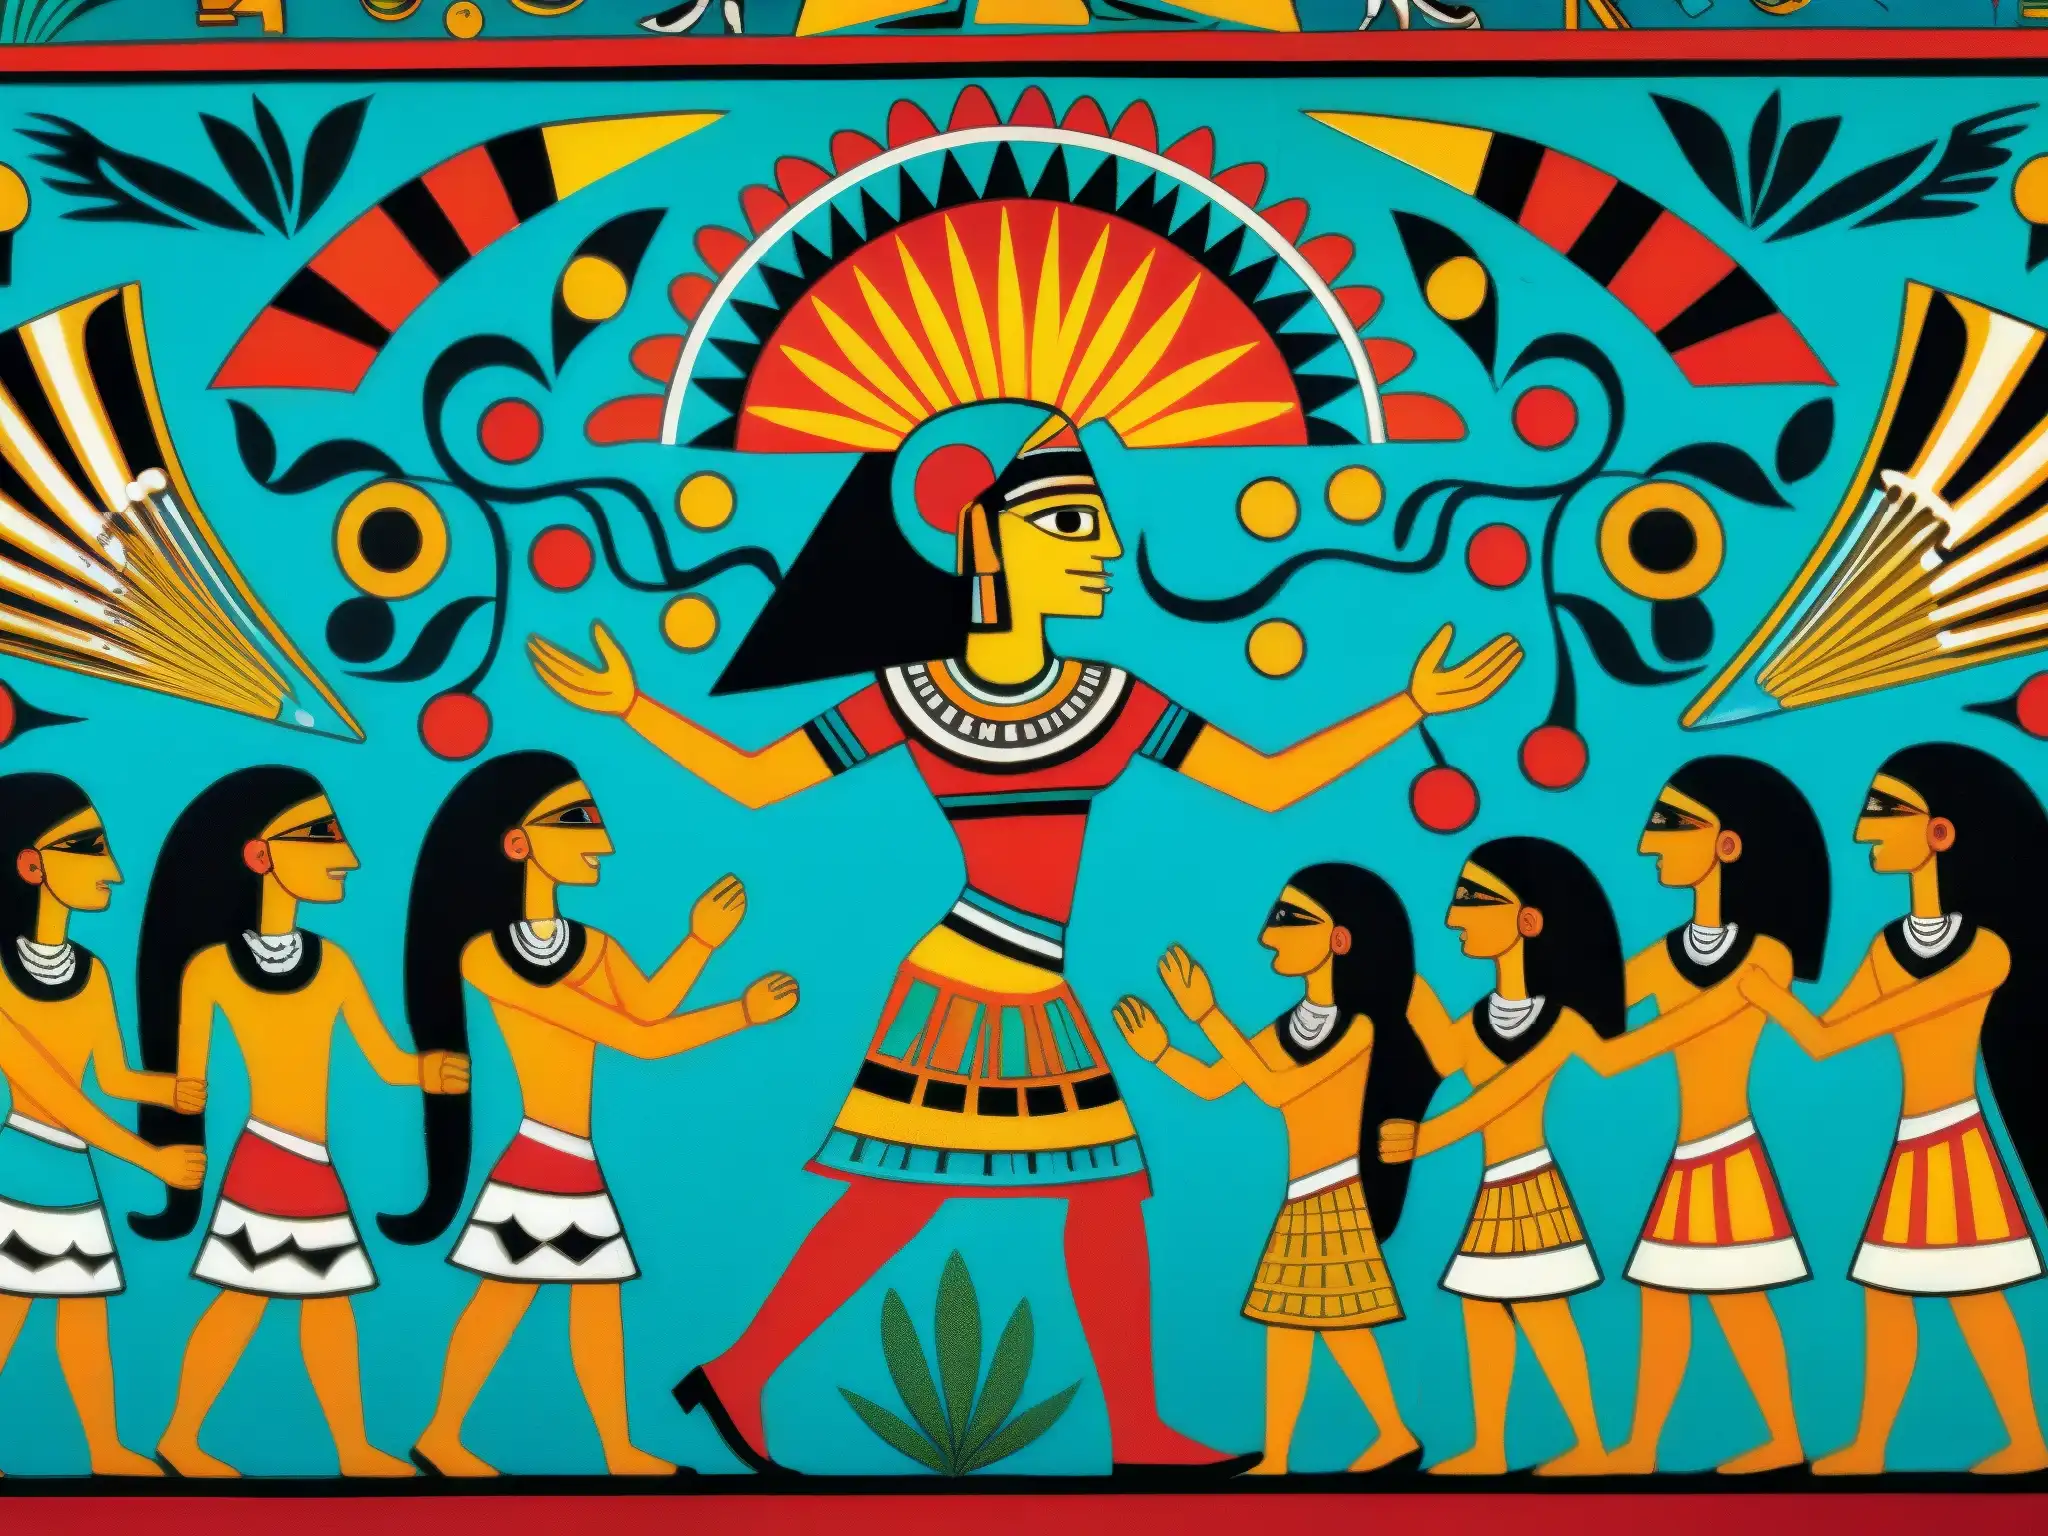 Vibrante mural prehispánico del Tzitzimitl lucha oscuridad, con colores y patrones detallados y expresiones de temor y reverencia